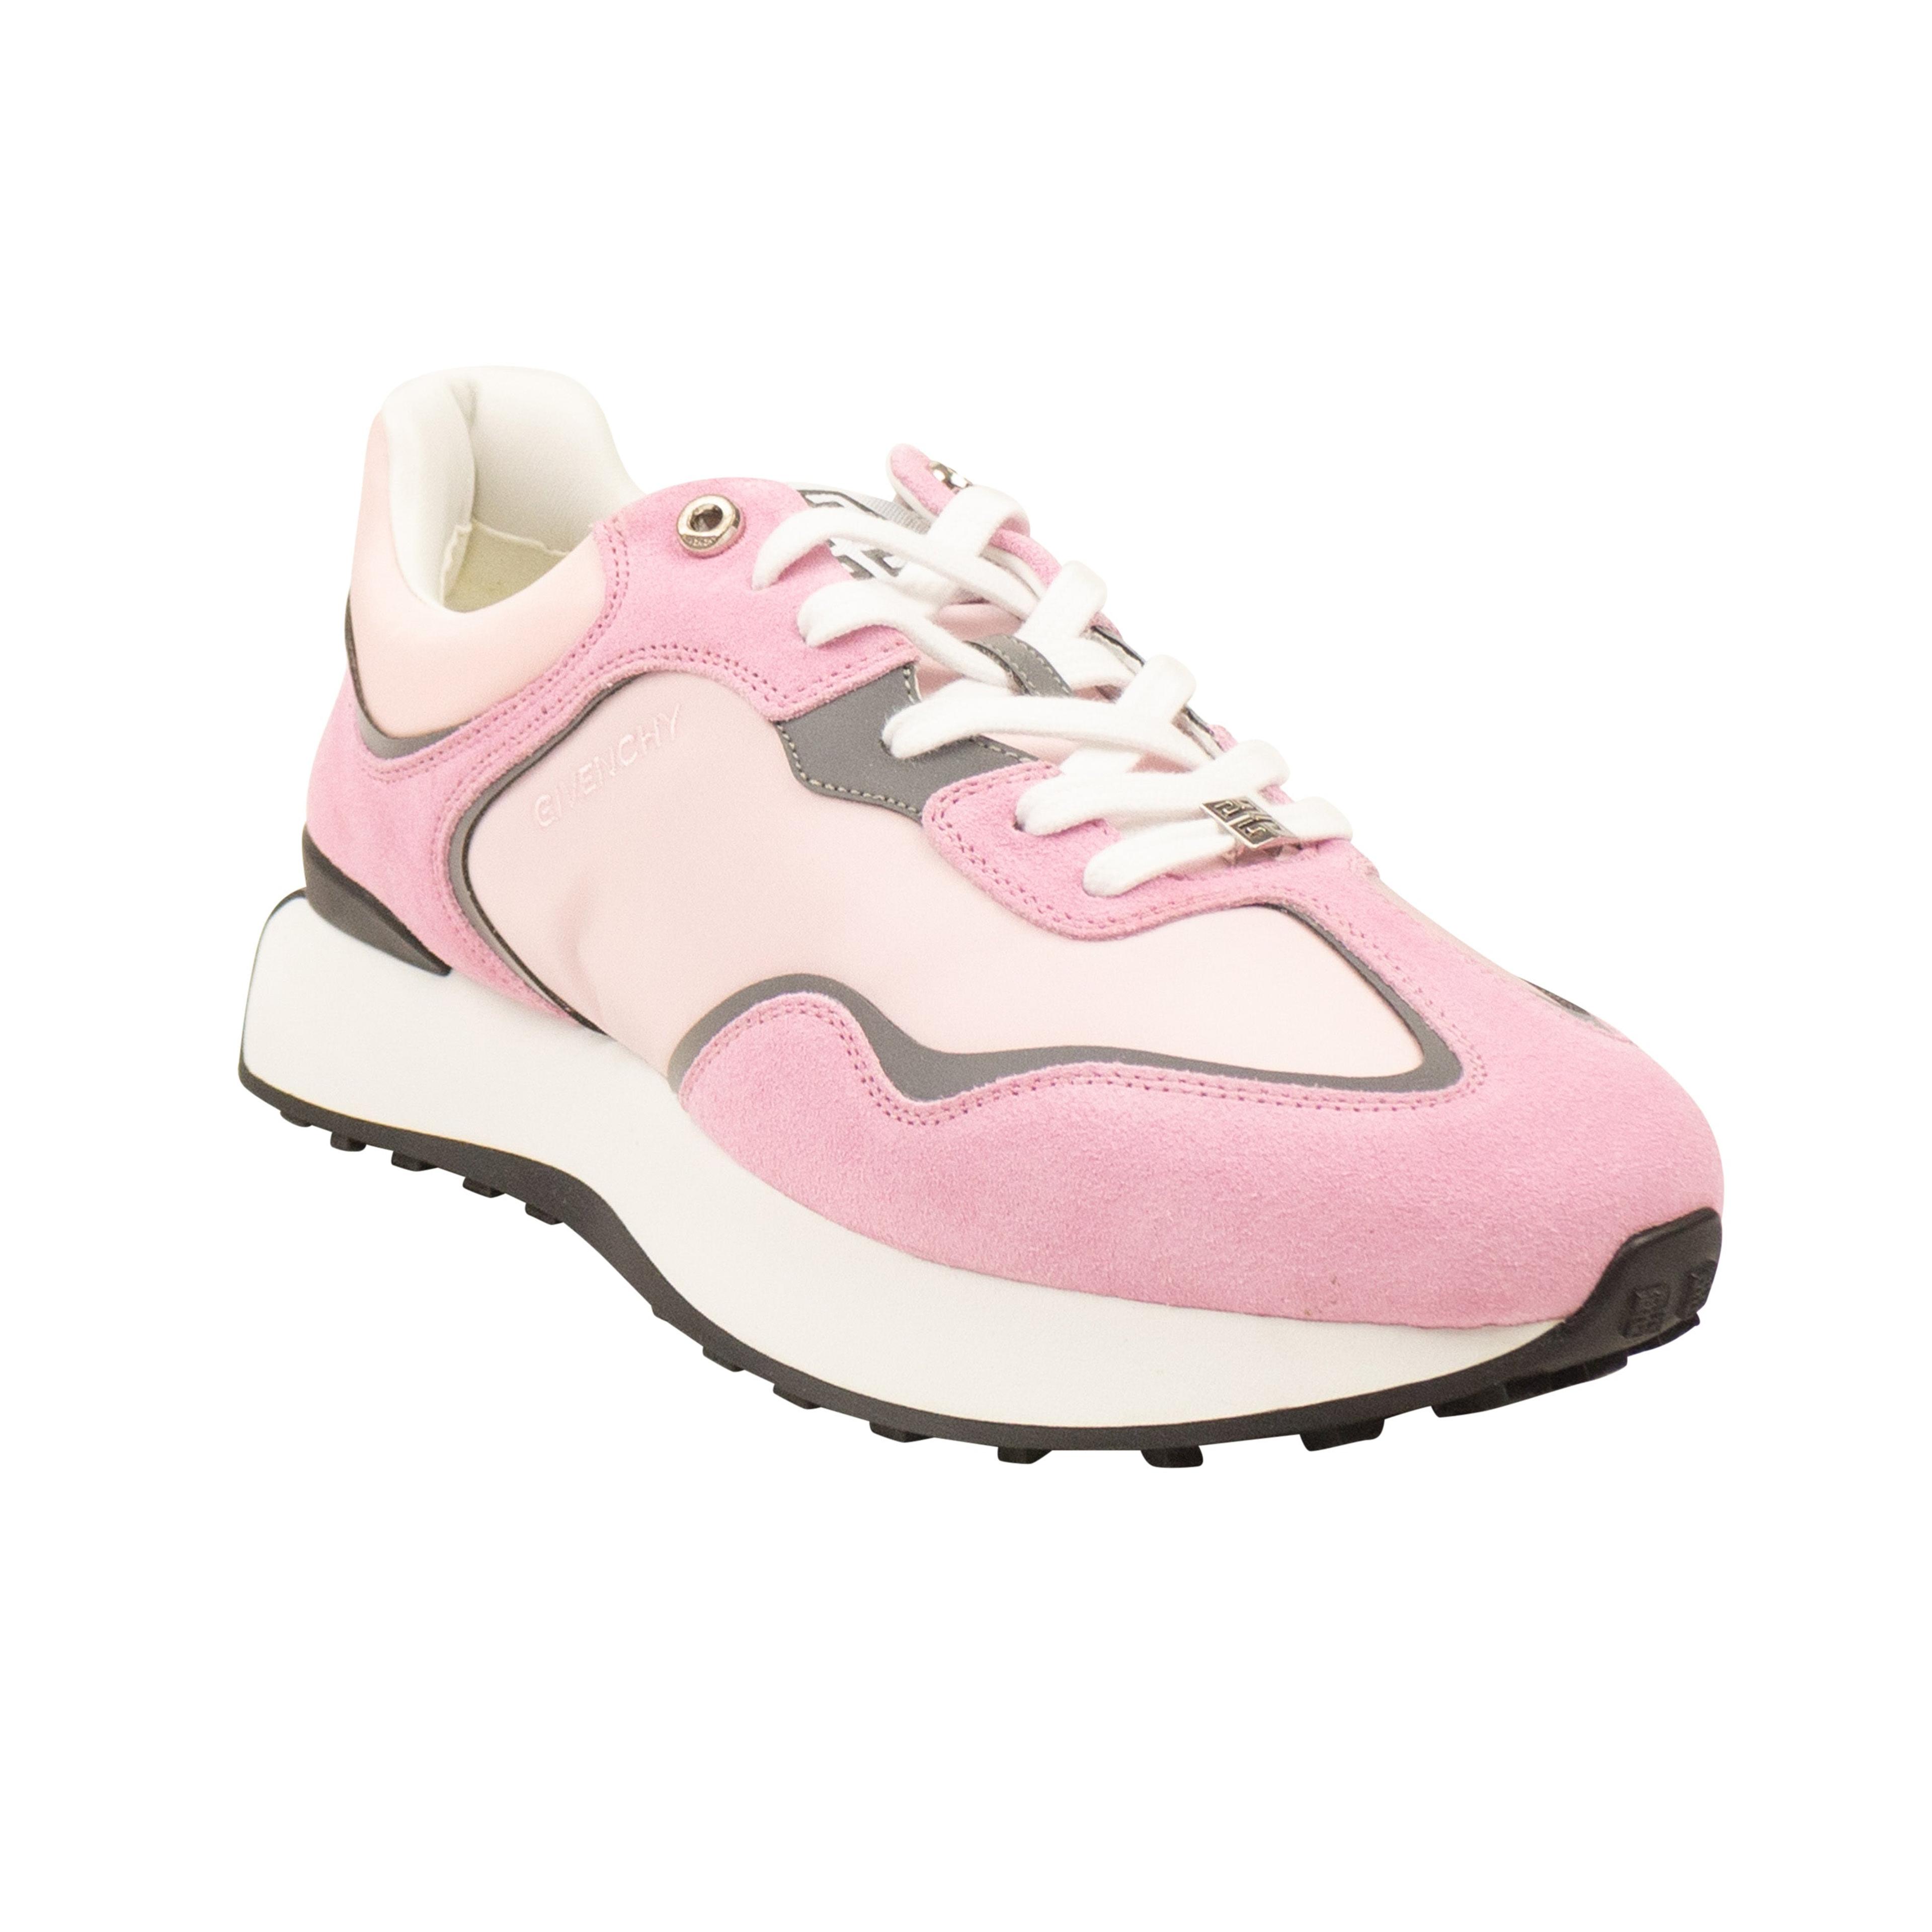 Alternate View 1 of Baby Pink Runner Sneakers